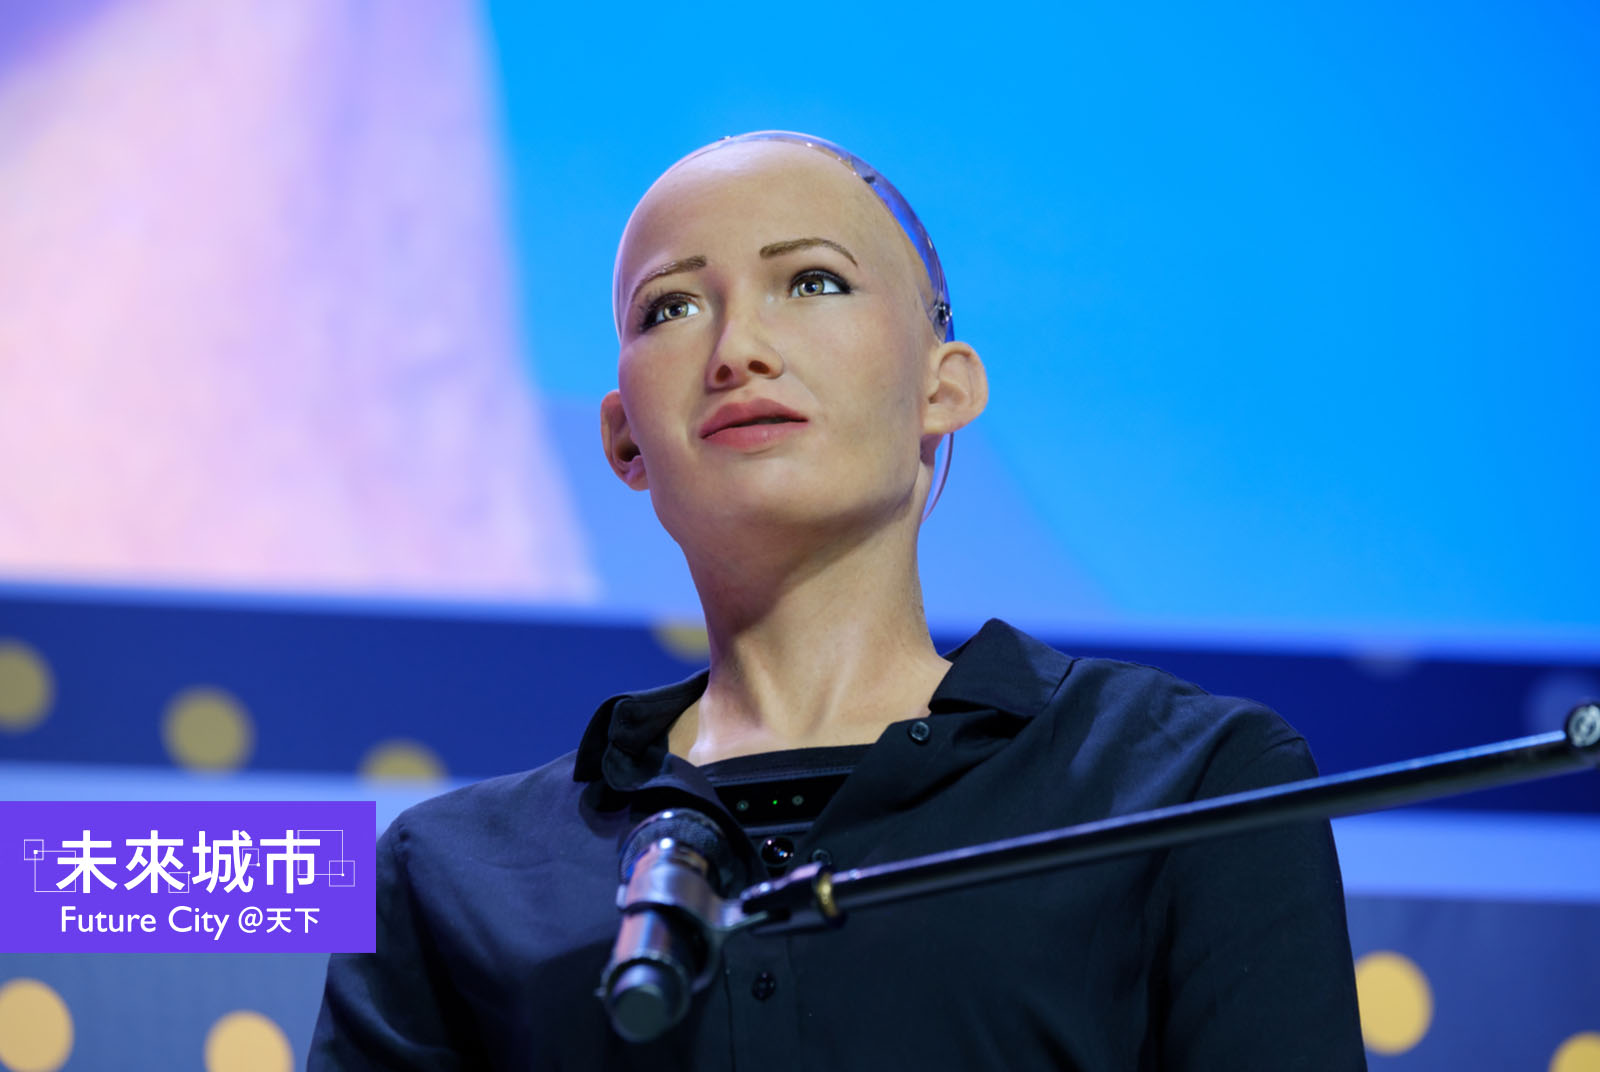 類人類AI機器人「索菲亞」是全球首位獲得國家公民身份的機器人。